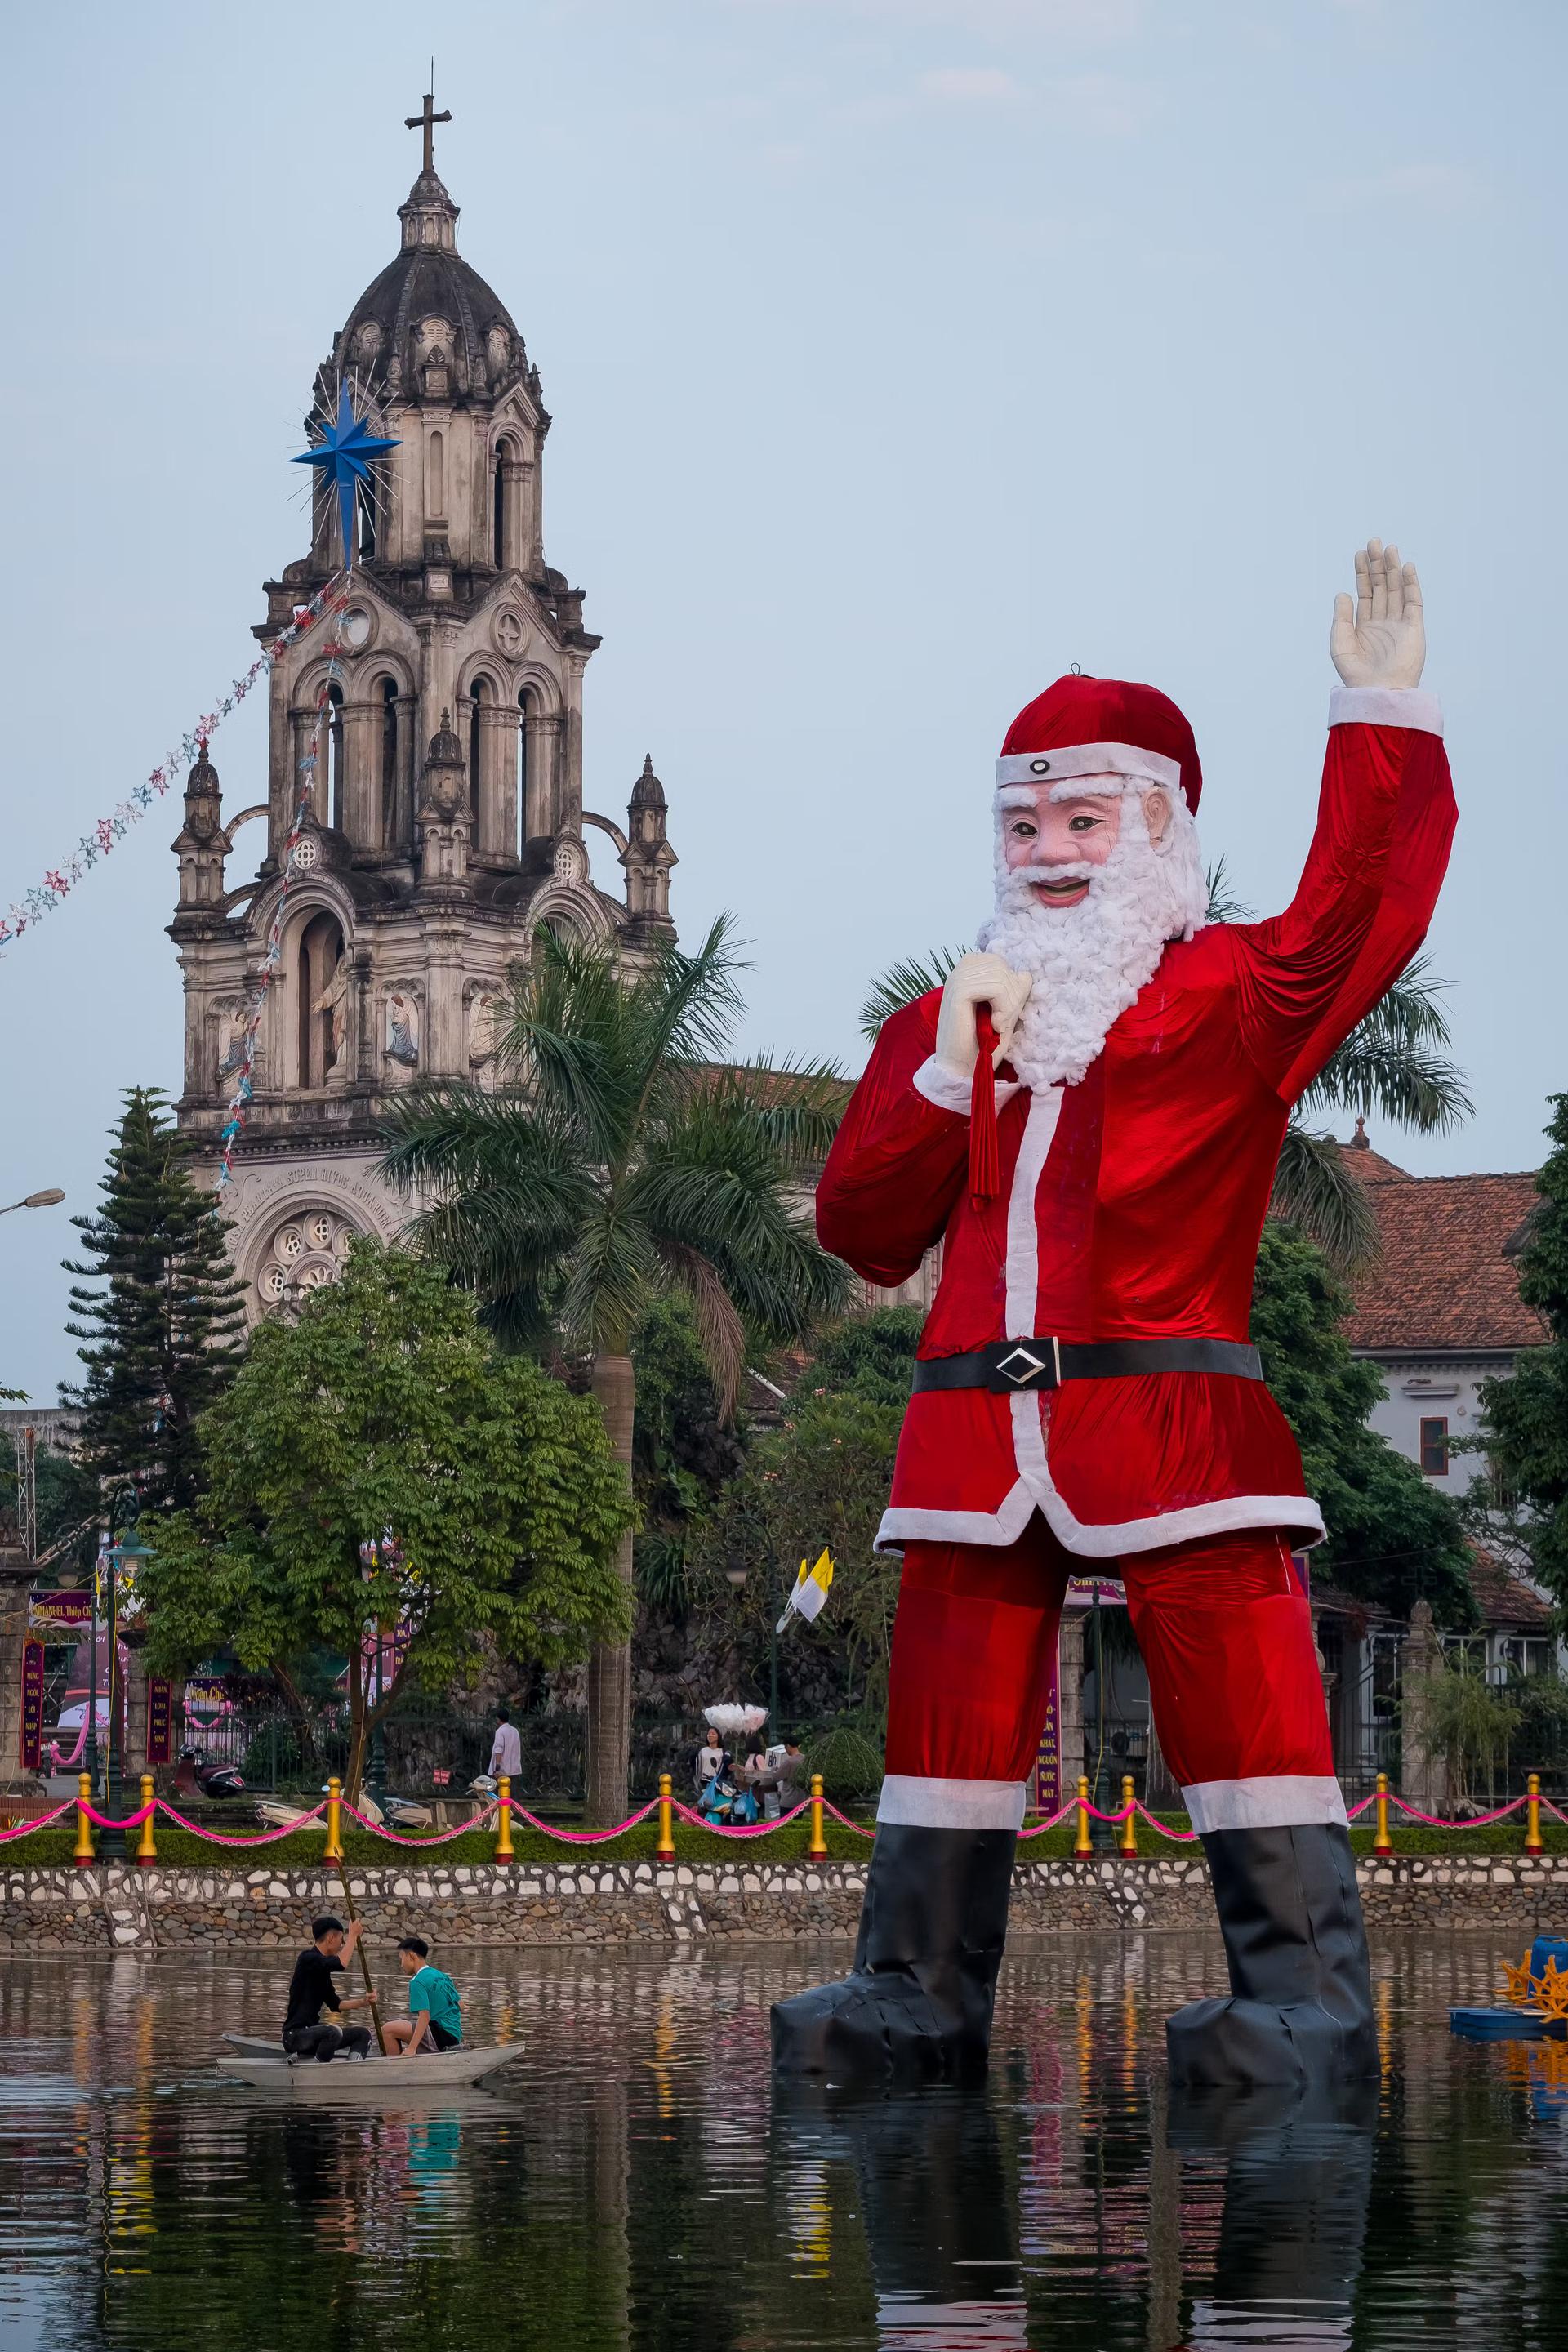   En gigantisk, flytande jultomte står i sjön framför Phu My Cathedral i Hanoi, Vietnam.